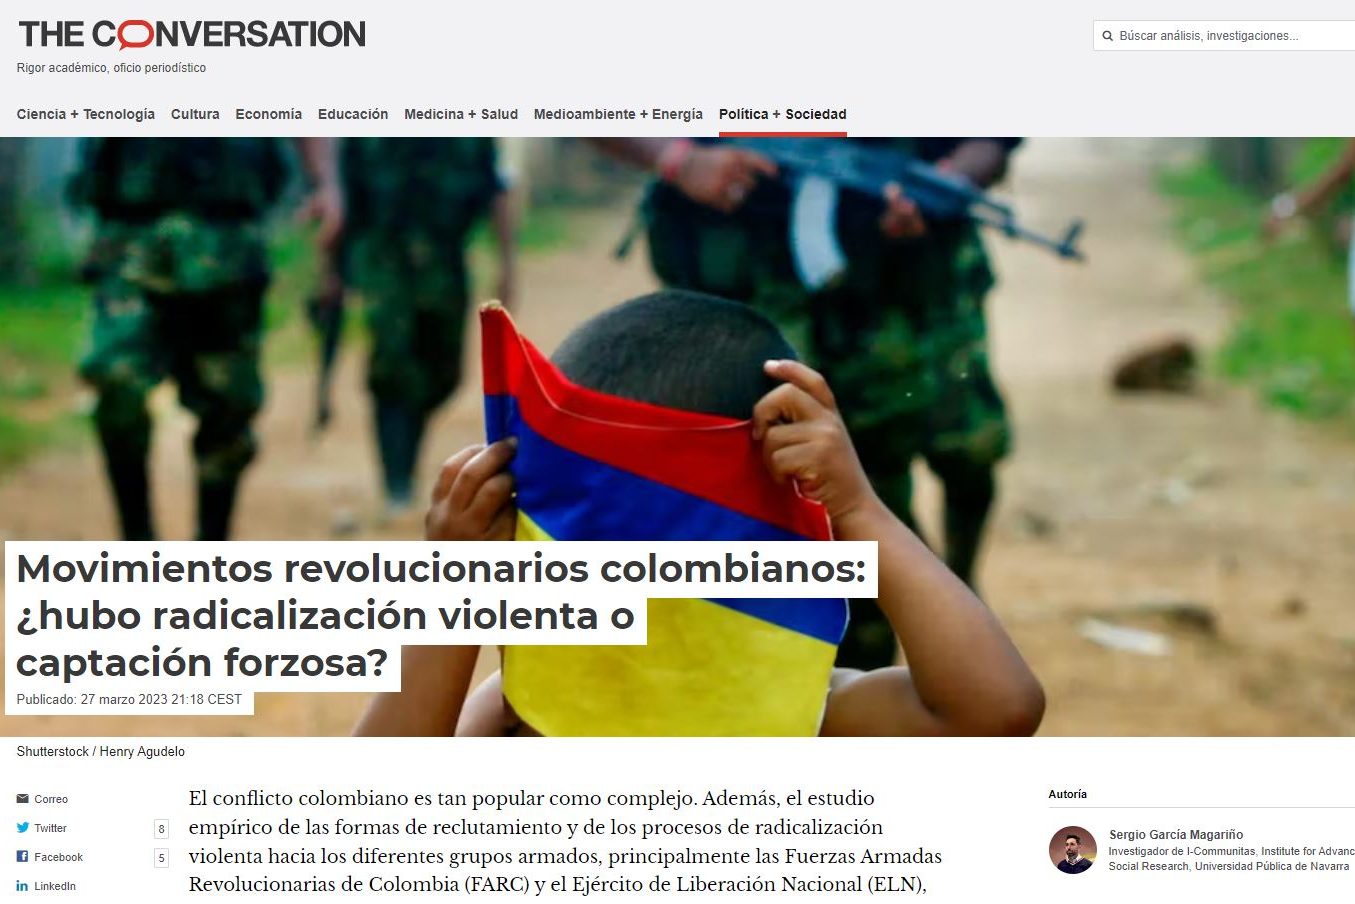 Movimientos revolucionarios colombianos: ¿hubo radicalización violenta o captación forzosa?